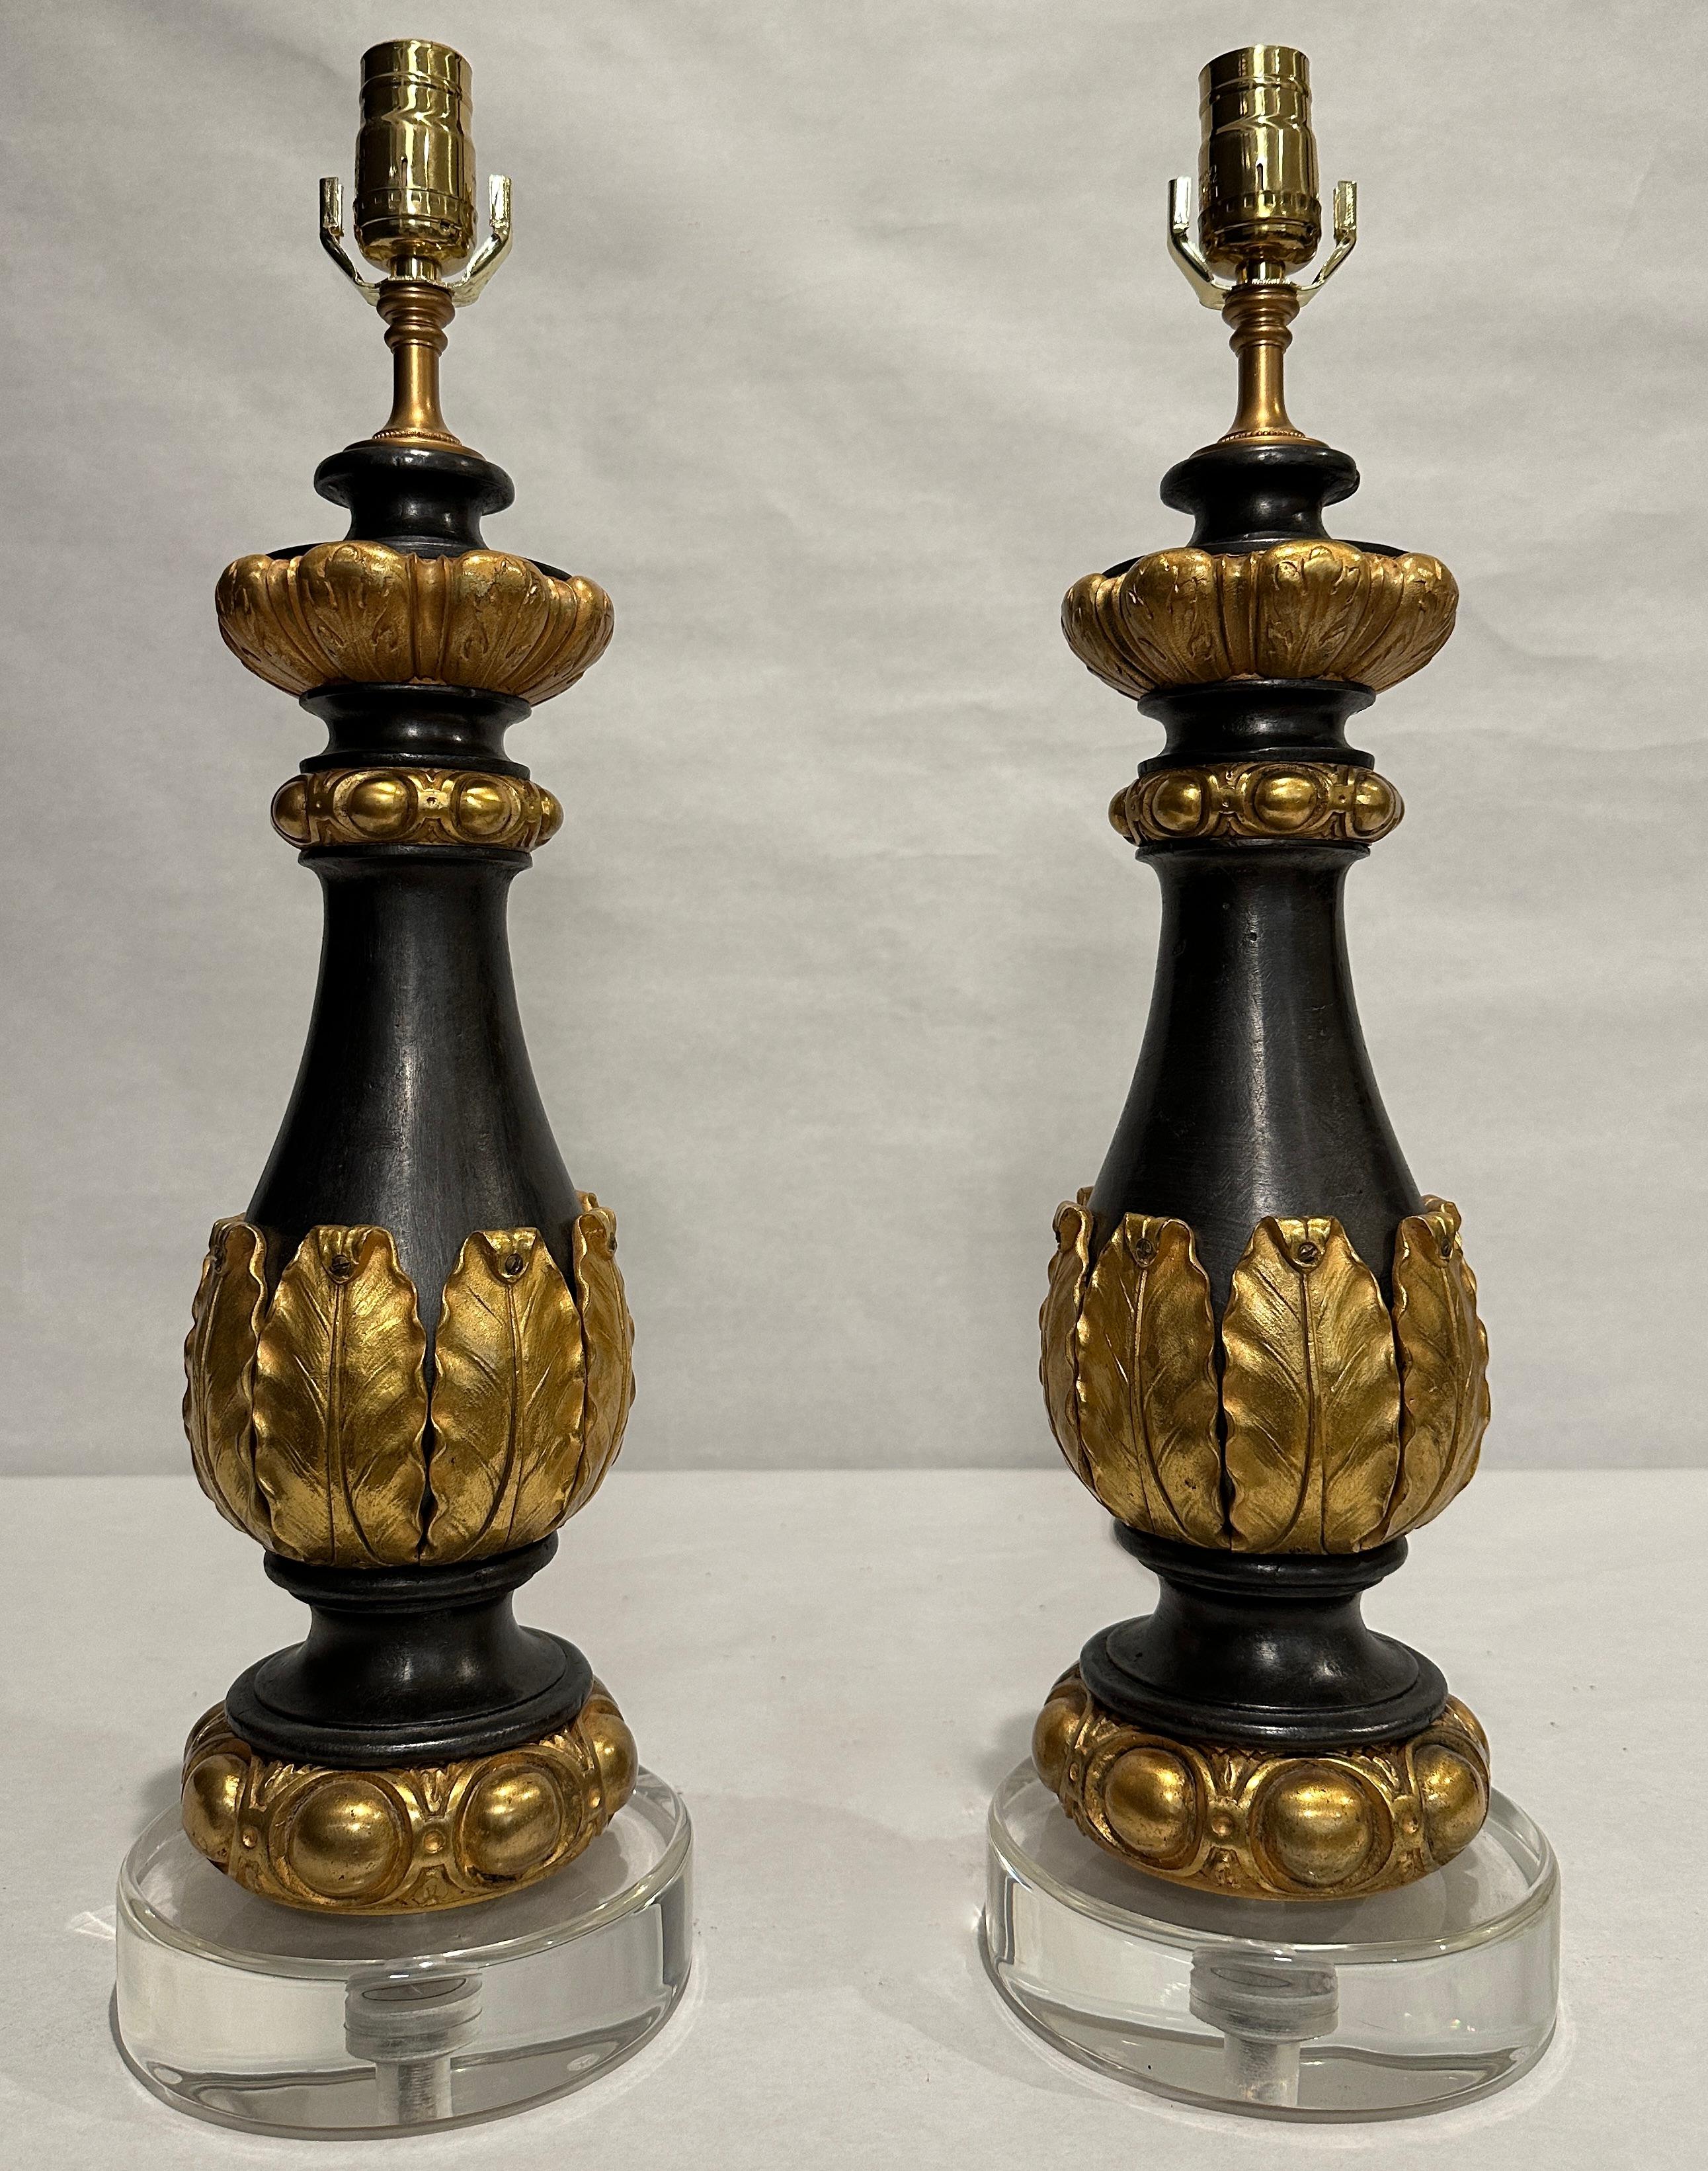 Paar Garnituren aus patiniertem Eisen und vergoldeter Bronze aus dem 19. Jahrhundert als Lampen auf runden Lucitsockeln. Vase aus Korpus umgeben von vergoldeten Bronzeblättern. Ei- und Abnäherform Kragen oben und unten.